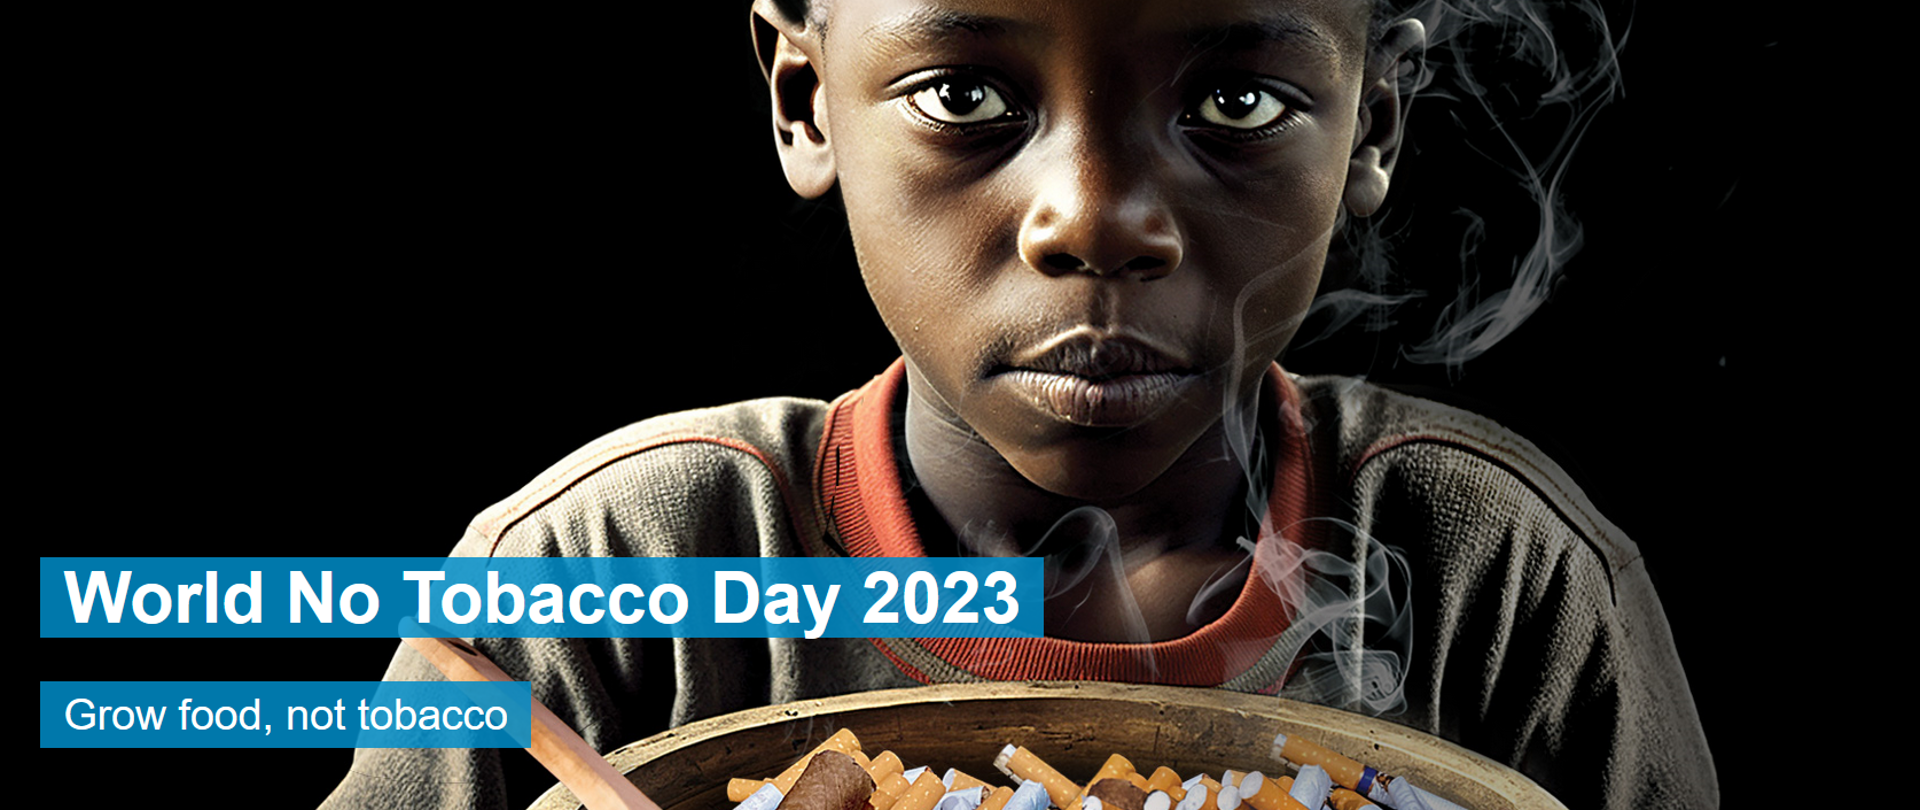 Na zdjęciu widoczne dziecko na czarnym tle, trzymające miskę z papierosami z widocznym unoszącym się dymem.